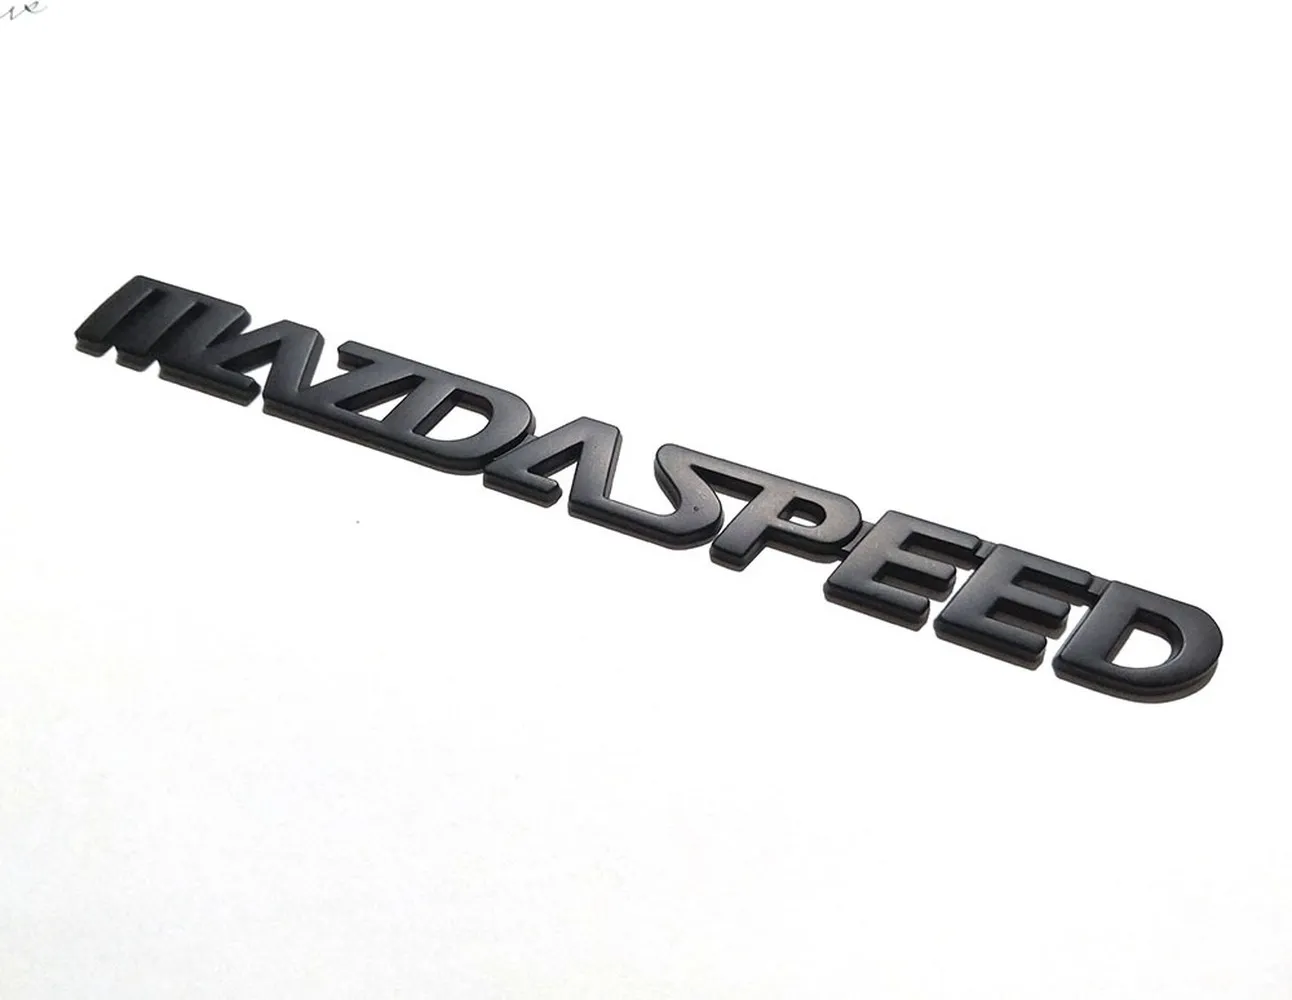  Autocollant D'insigne de Voiture pour Mazda Speed